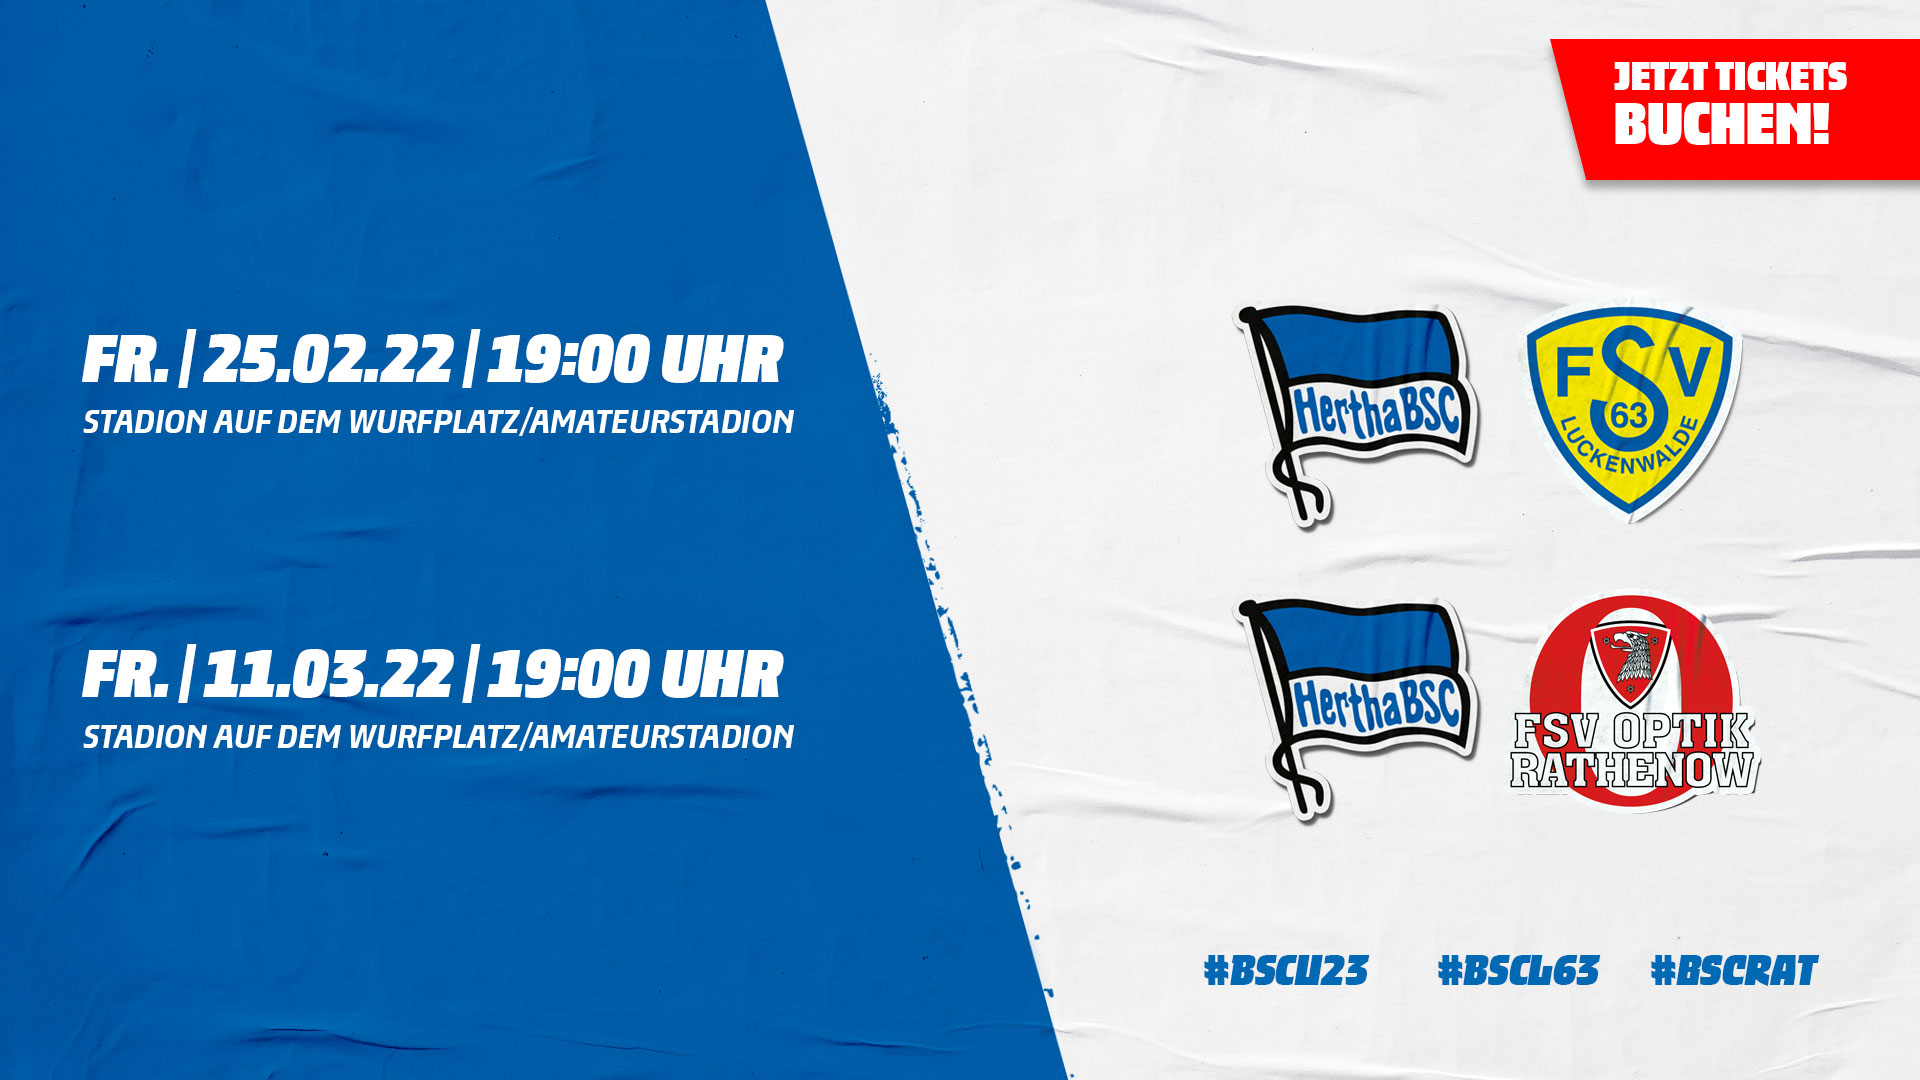 Die Logos von Hertha BSC, FSV 63 Luckenwalde und FSV Optik Rathenow mit den Anstoßzeiten.